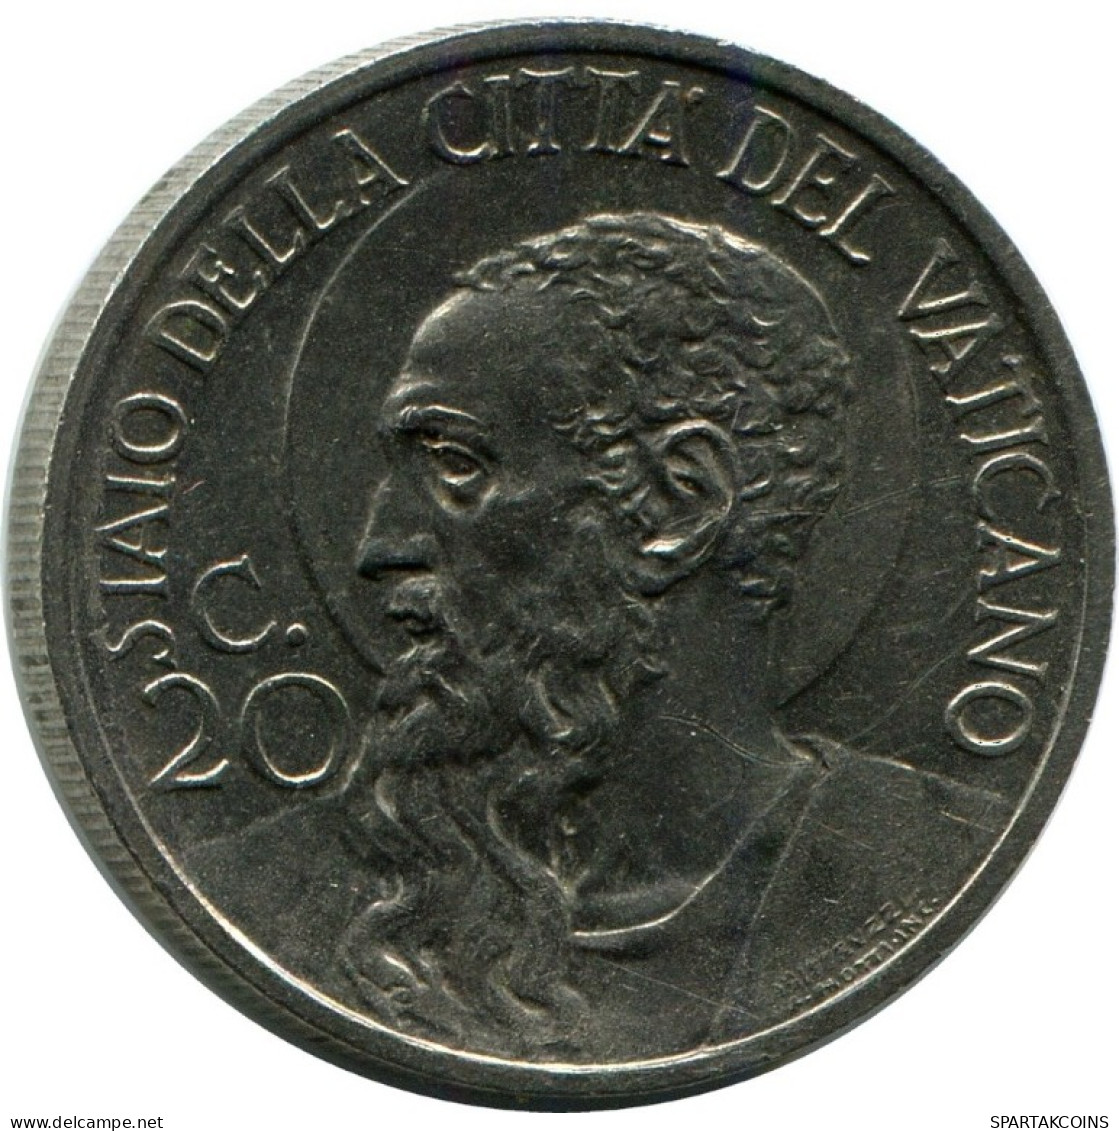 20 CENTESIMI 1934 VATICANO VATICAN Moneda Pius XI (1922-1939) #AH334.16.E.A - Vaticaanstad